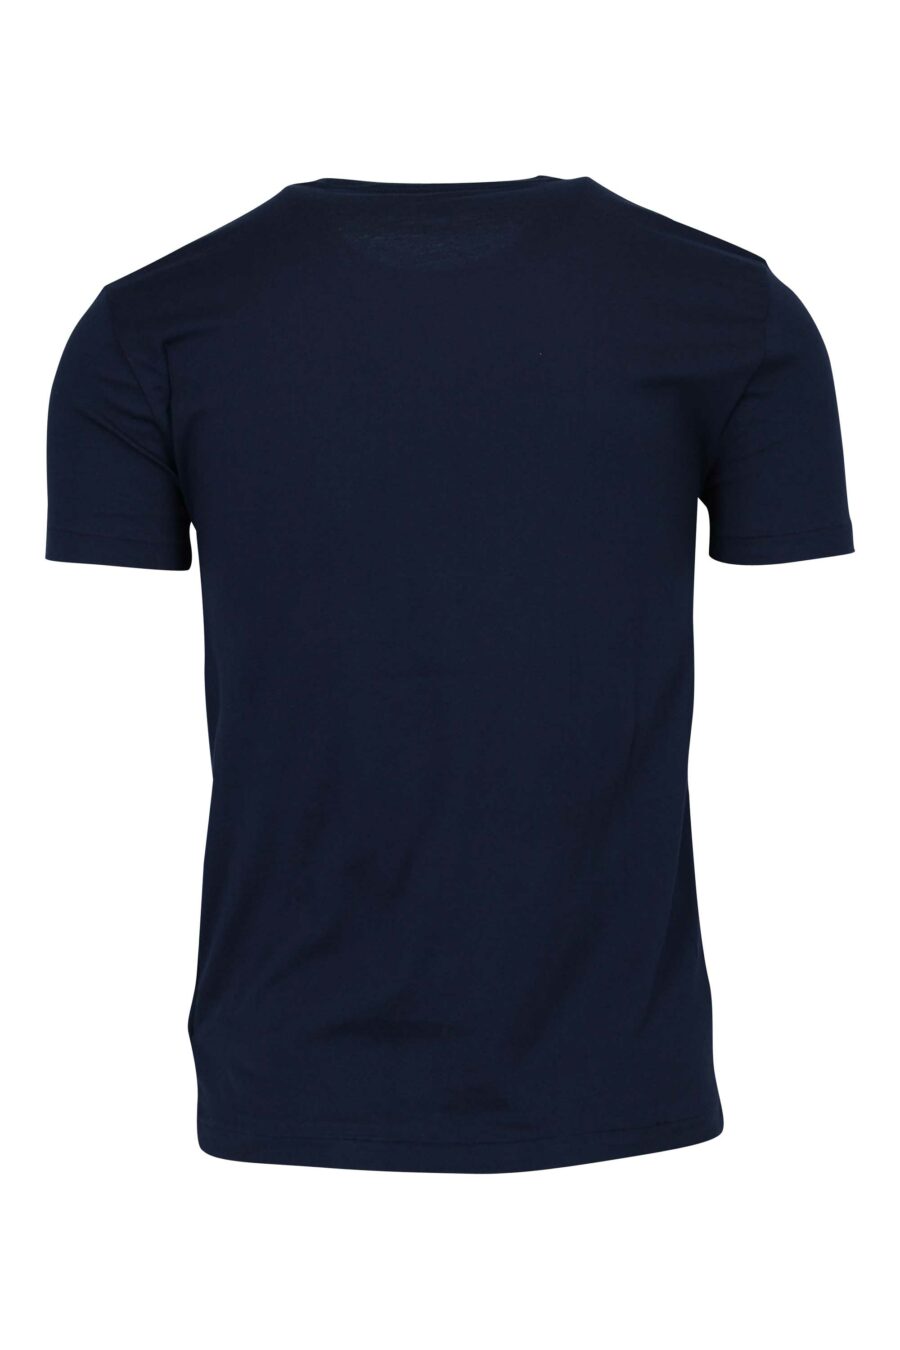 Polo Ralph Lauren - Camiseta azul oscuro con minilogo polo - BLS